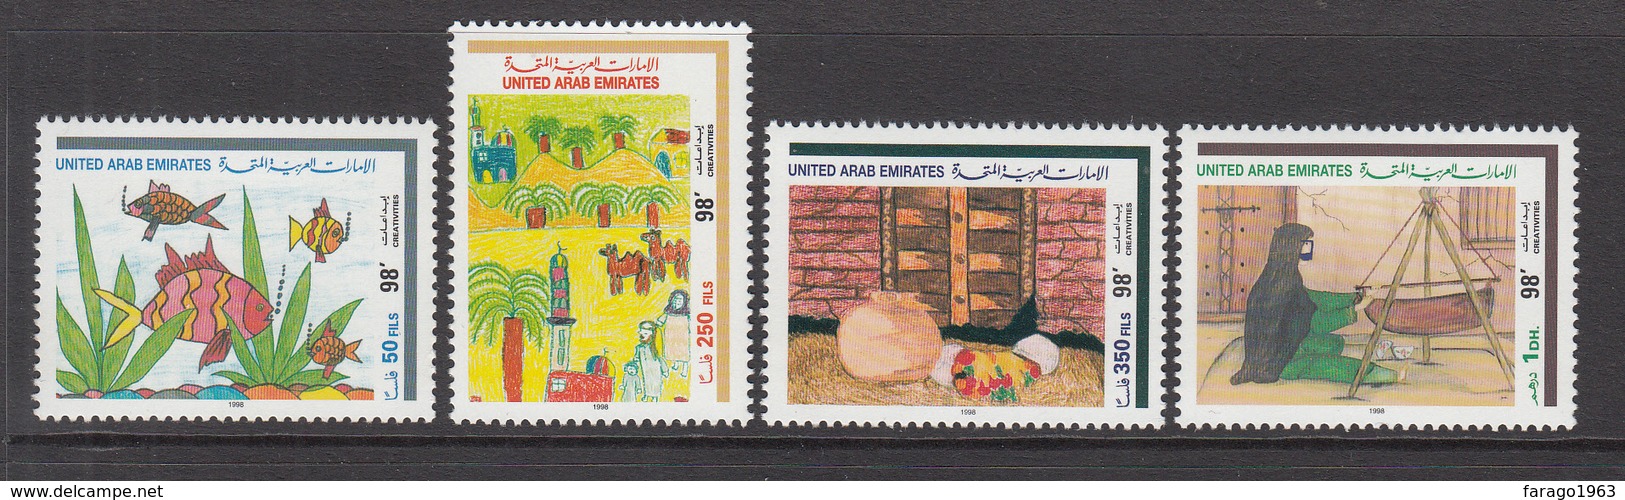 1998 United Arab Emirates  Children’s Pictures Set Of 4 MNH - United Arab Emirates (General)